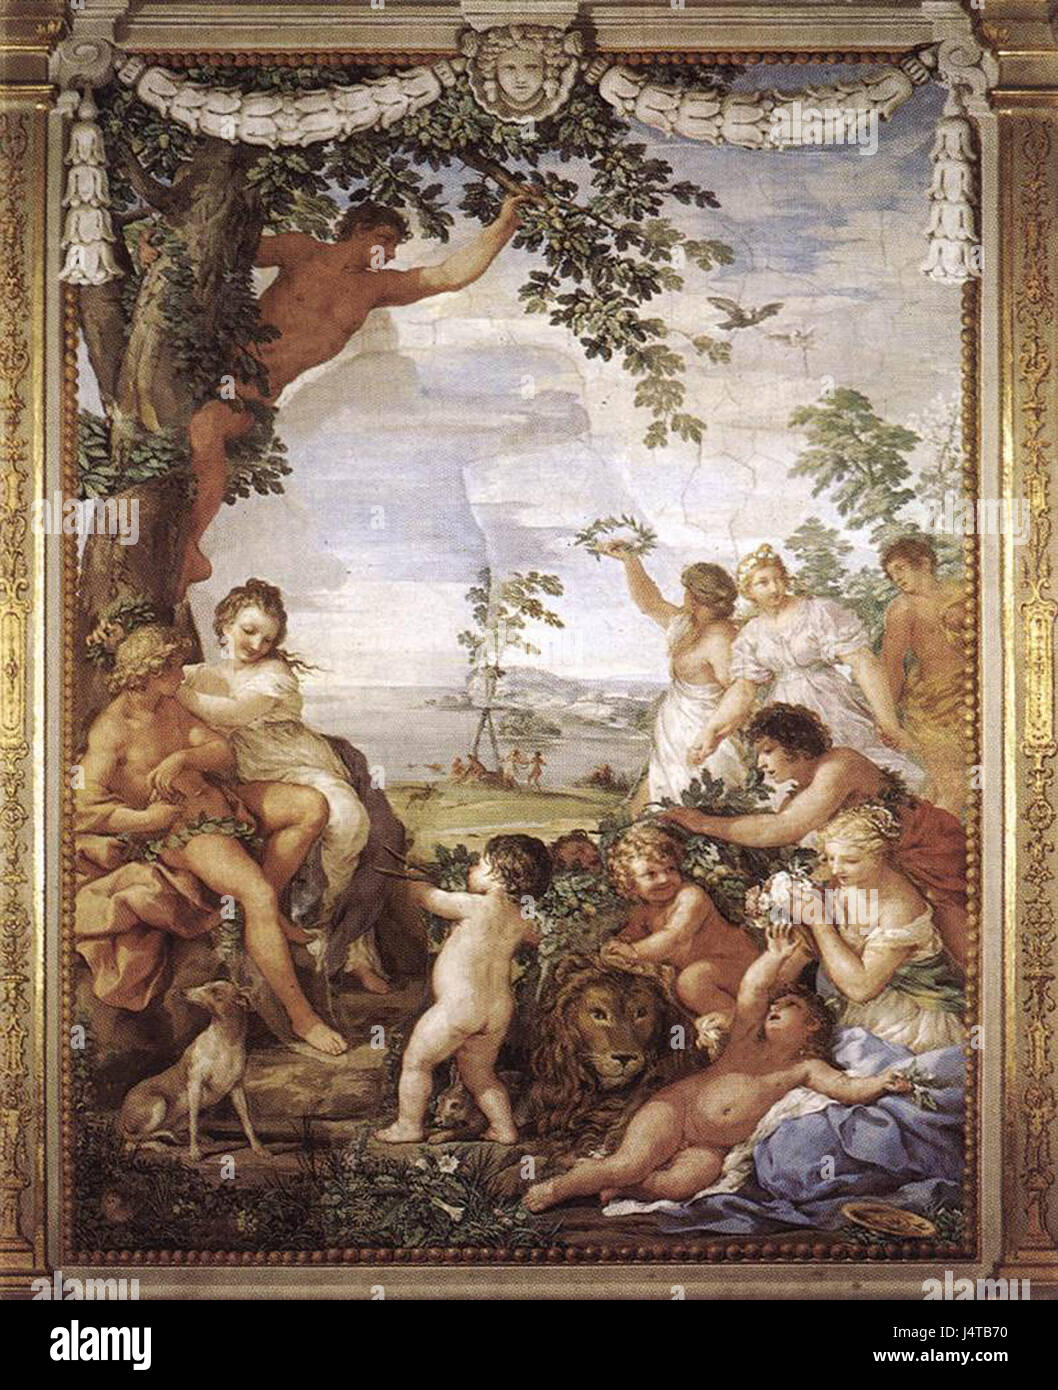 The Golden Age (fresco by Pietro da Cortona) Stock Photo